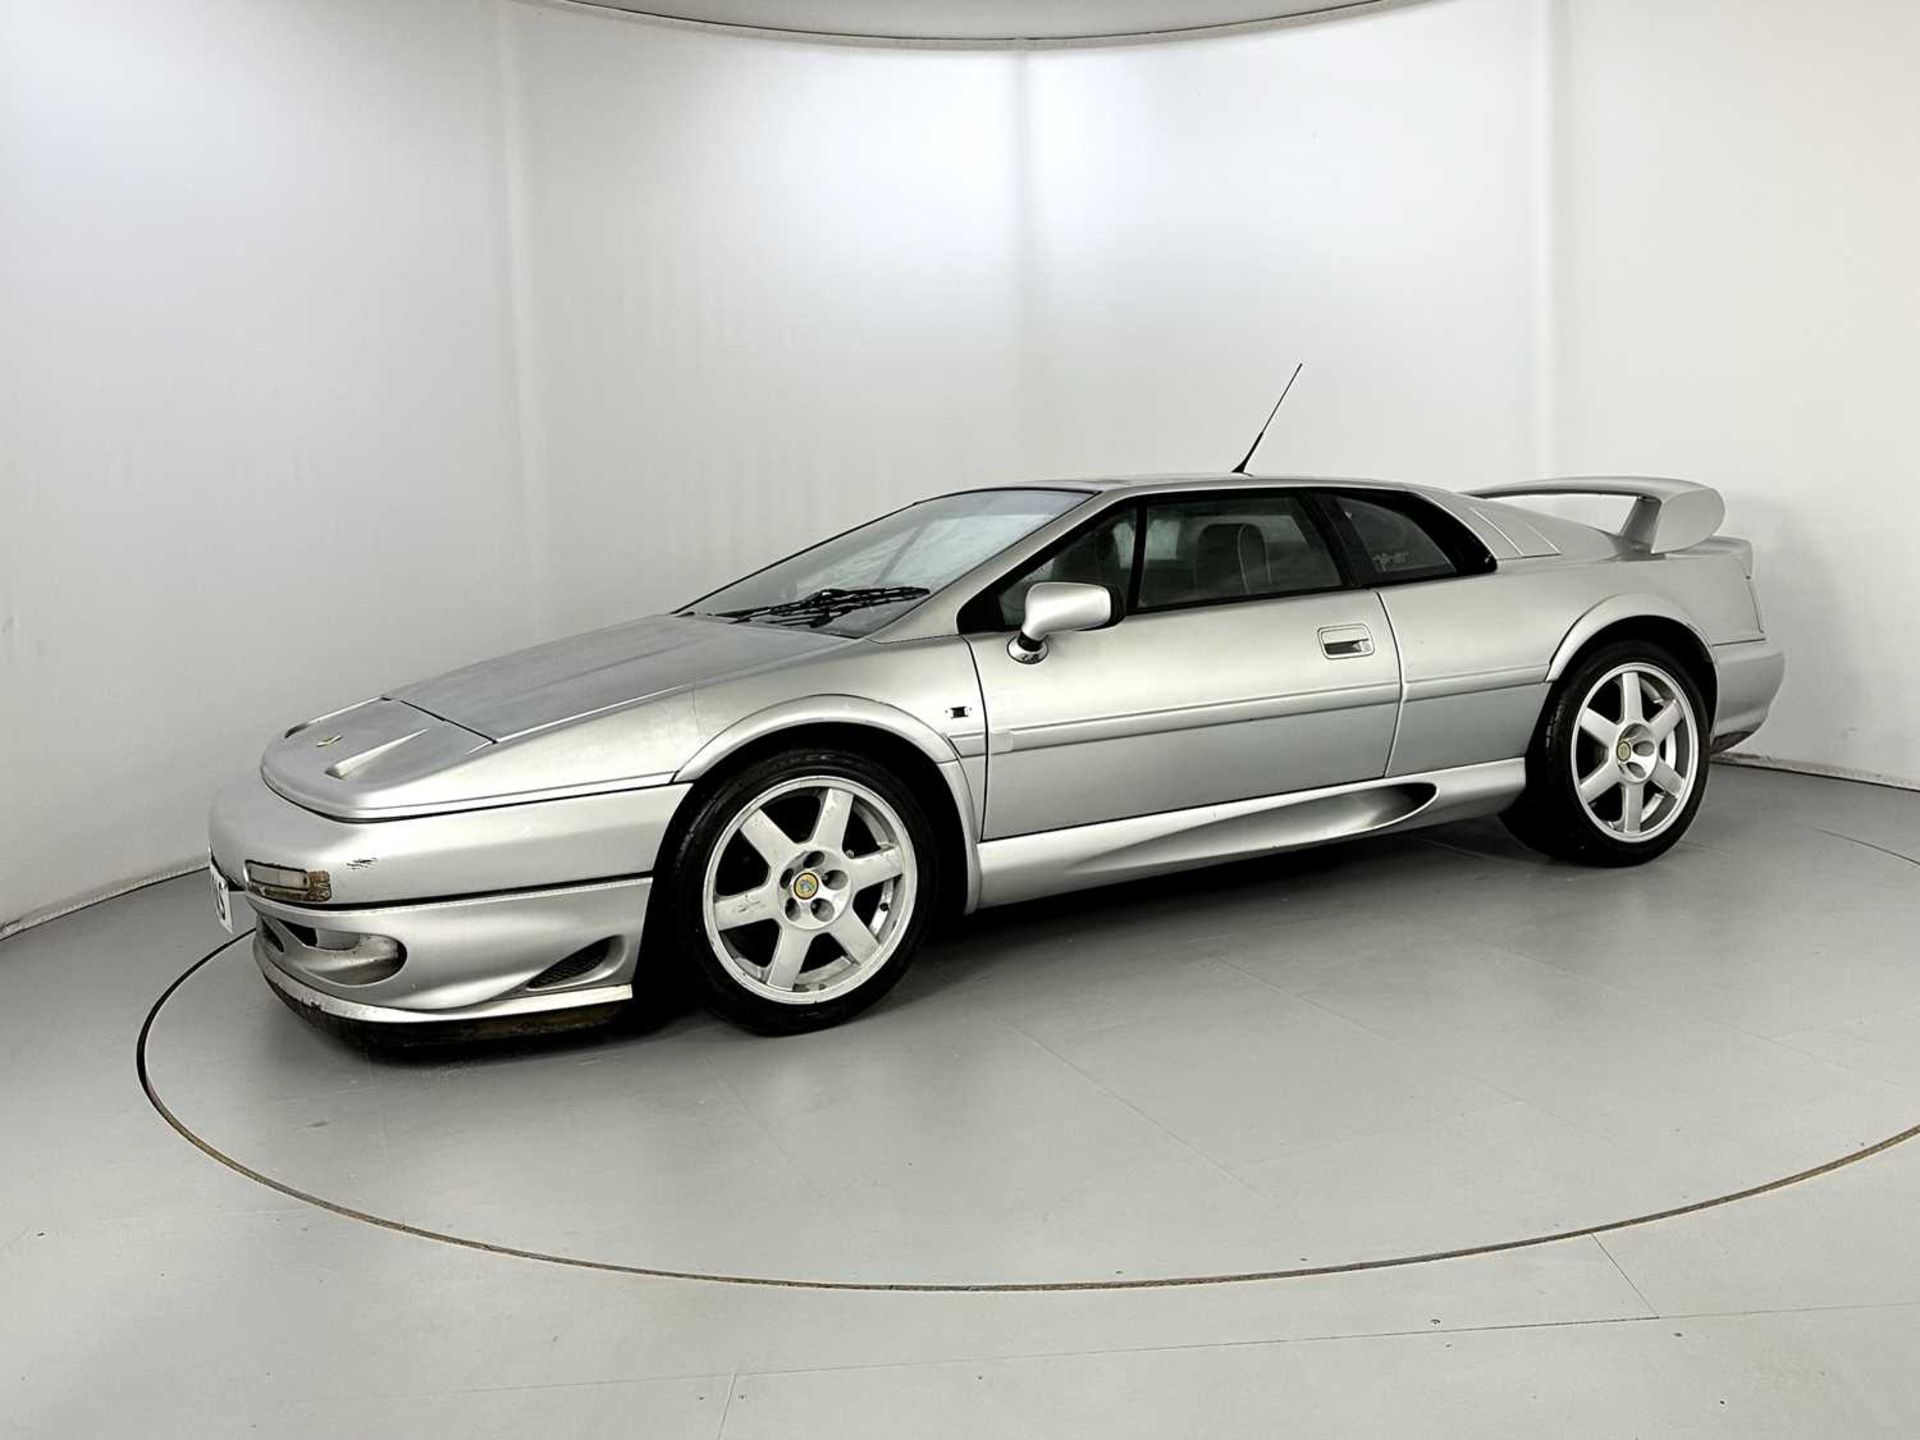 1998 Lotus Esprit V8 GT - Image 4 of 25